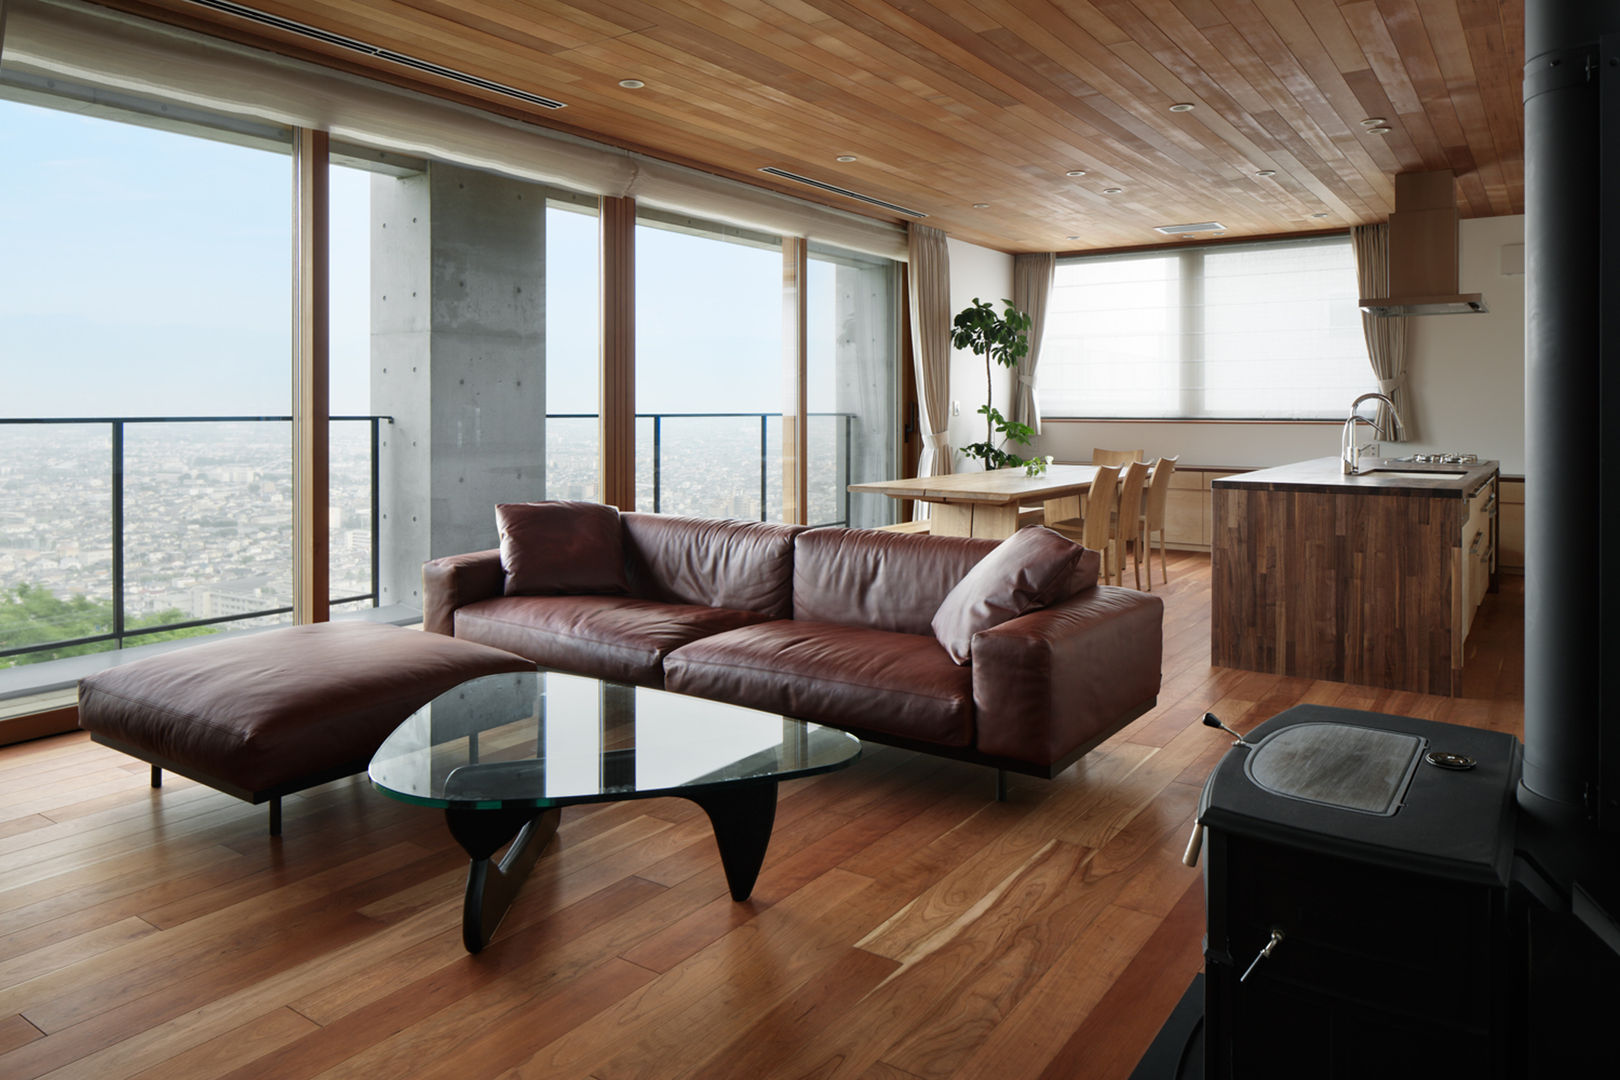 027甲府 I さんの家, atelier137 ARCHITECTURAL DESIGN OFFICE atelier137 ARCHITECTURAL DESIGN OFFICE Living room Wood Wood effect